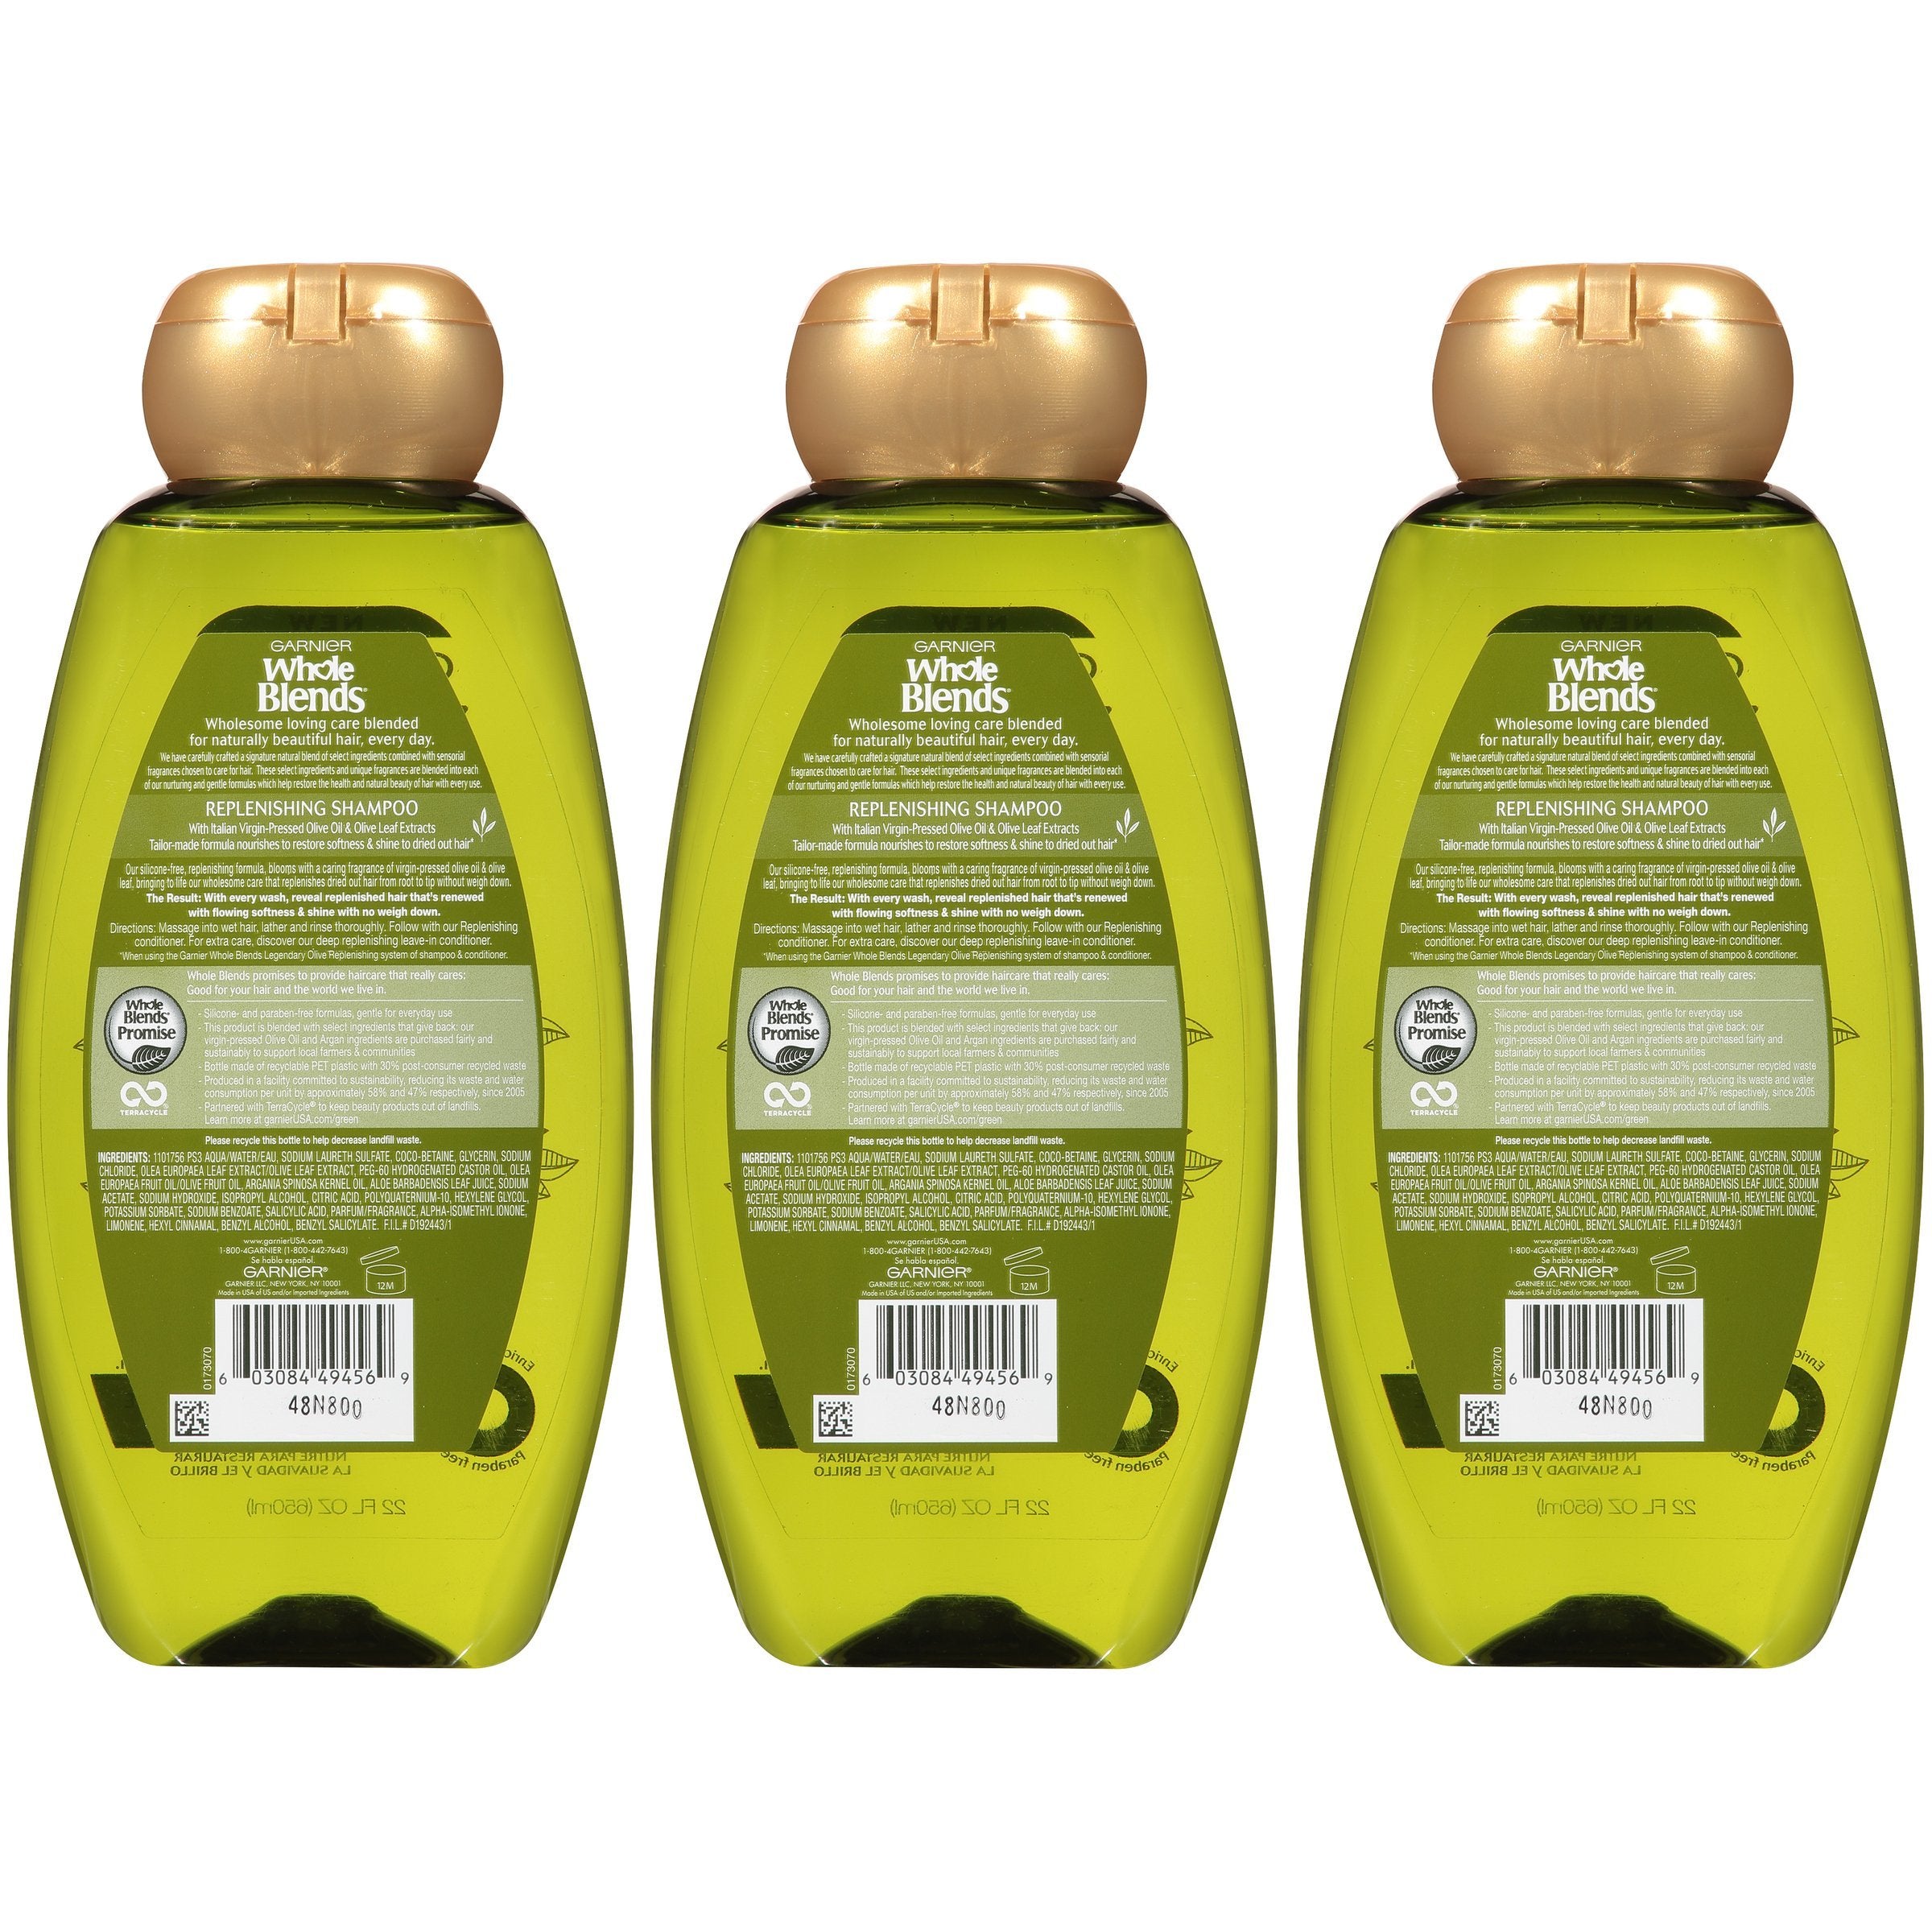 Garnier Whole Blends Replenishing Shampoo Legendary Olive, For Dry Hair, 3 count-CaribOnline